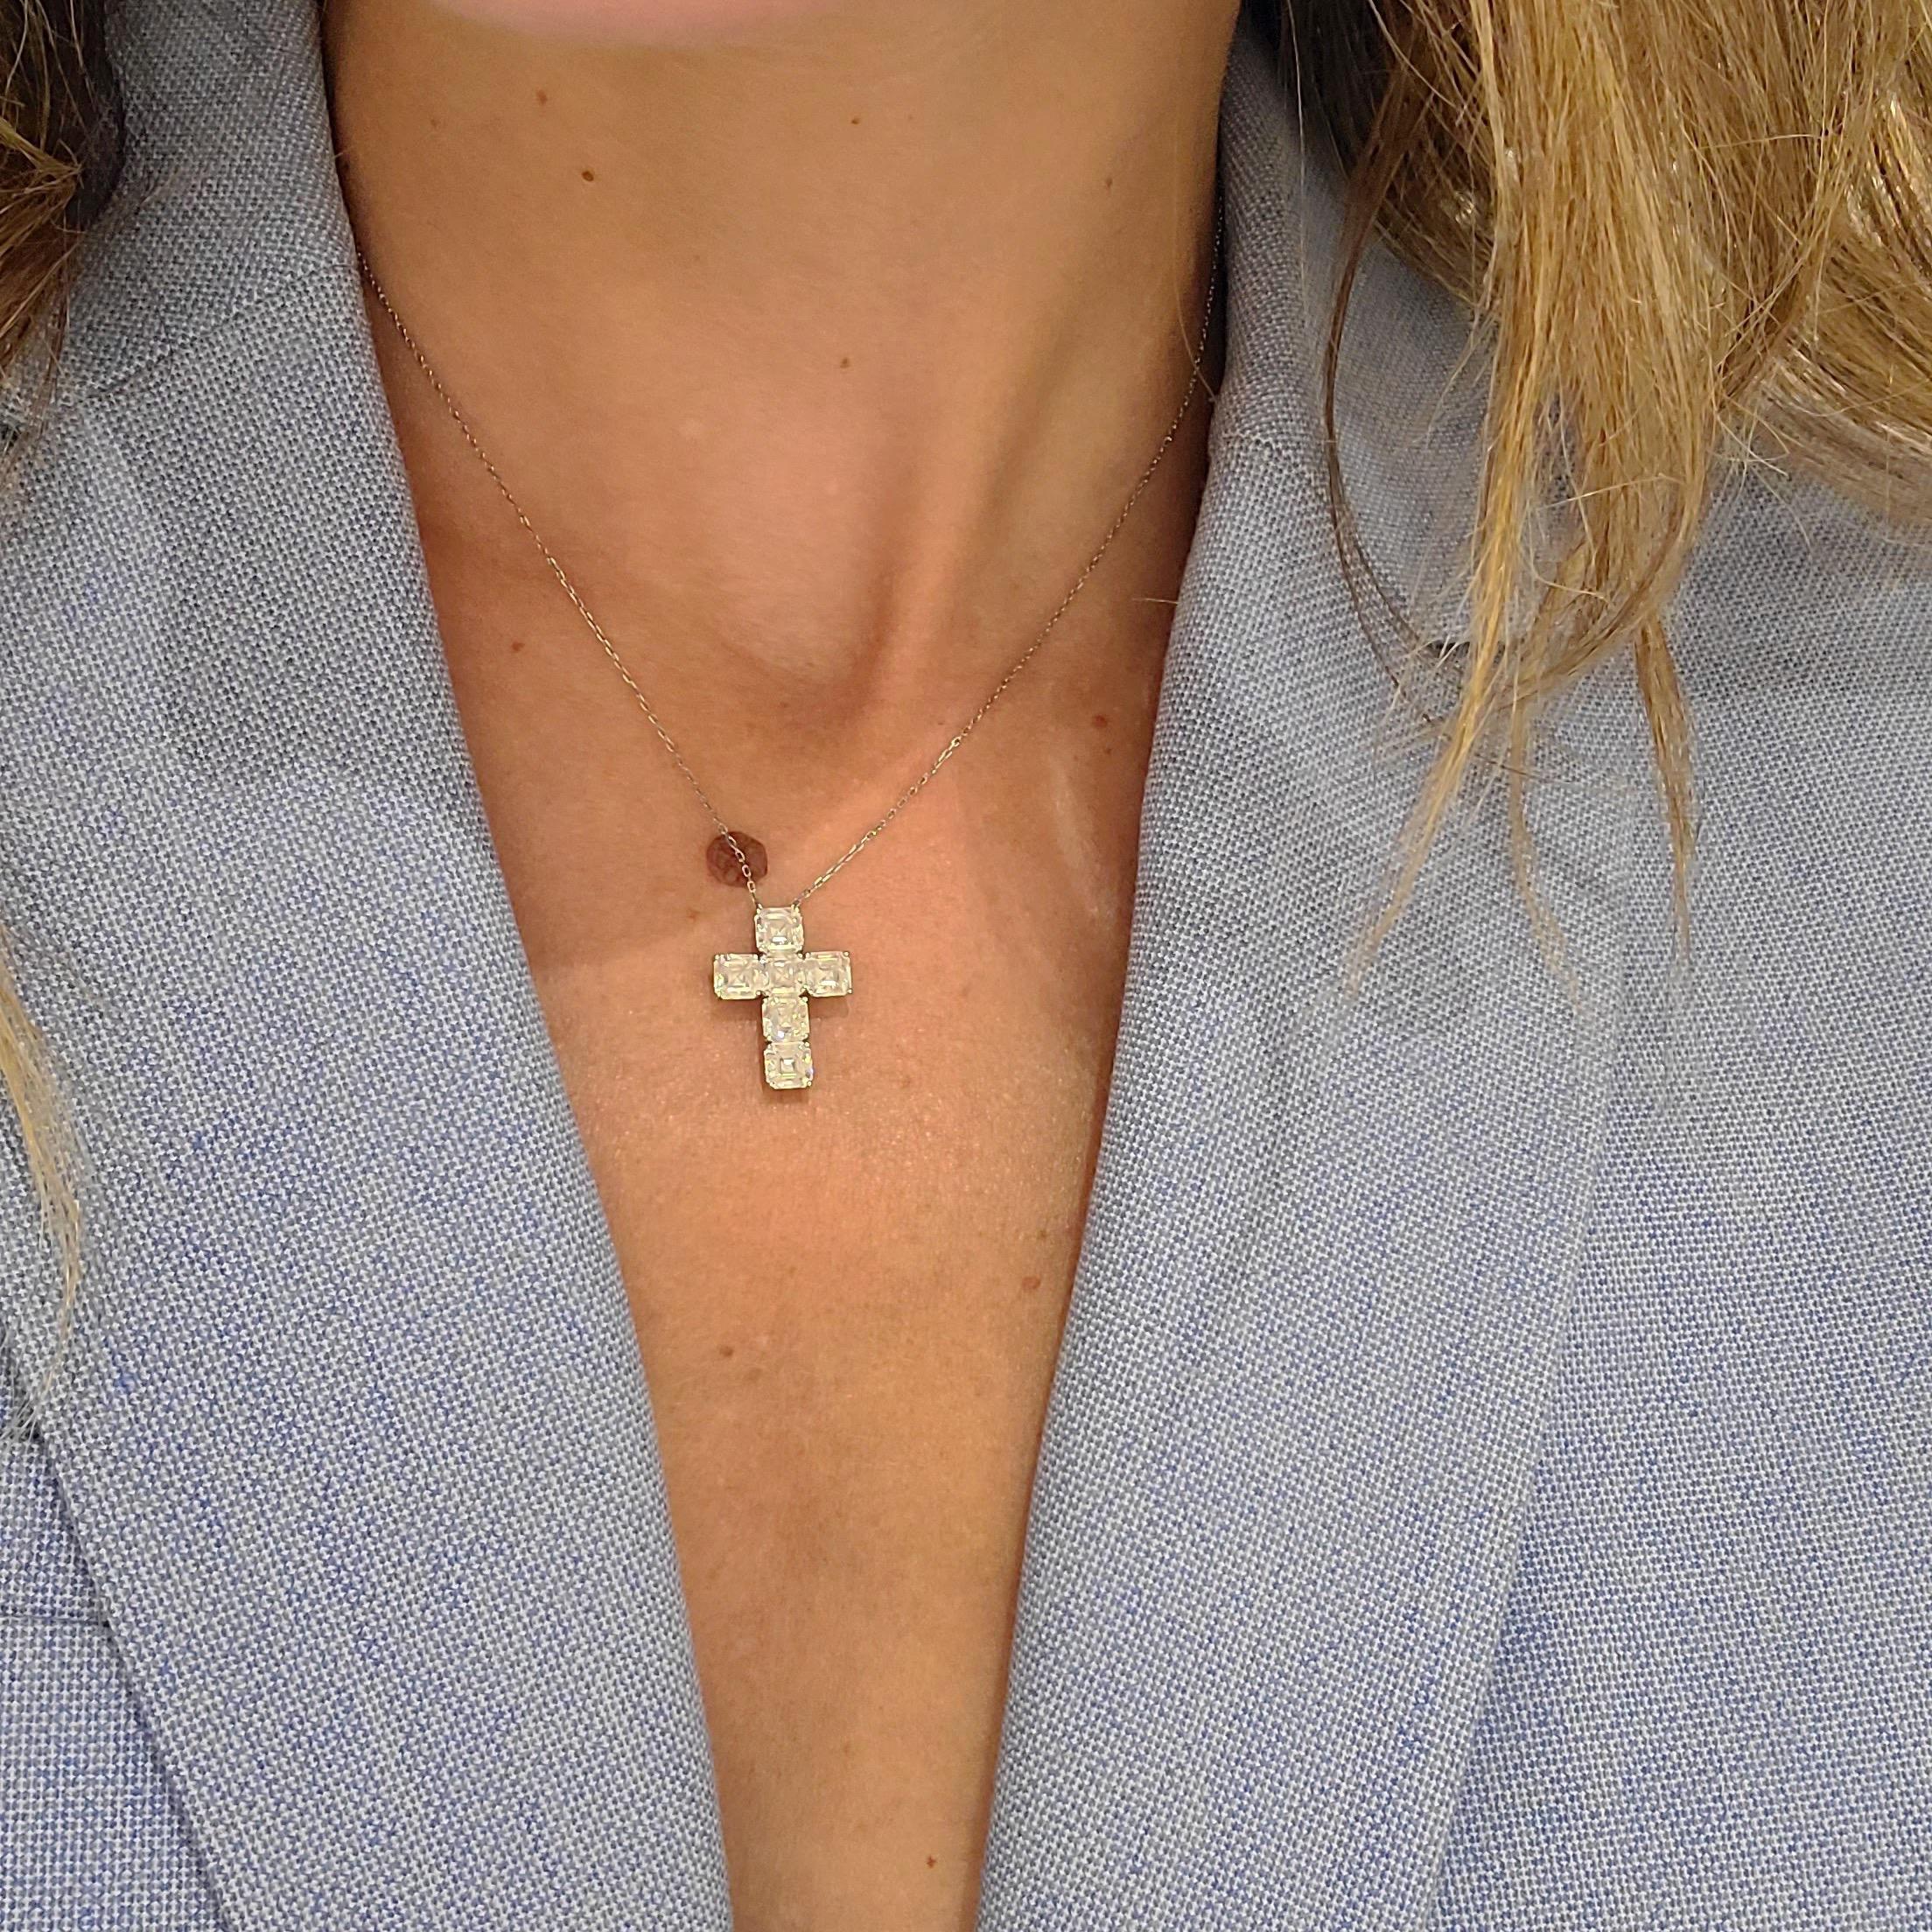 platinum crucifix